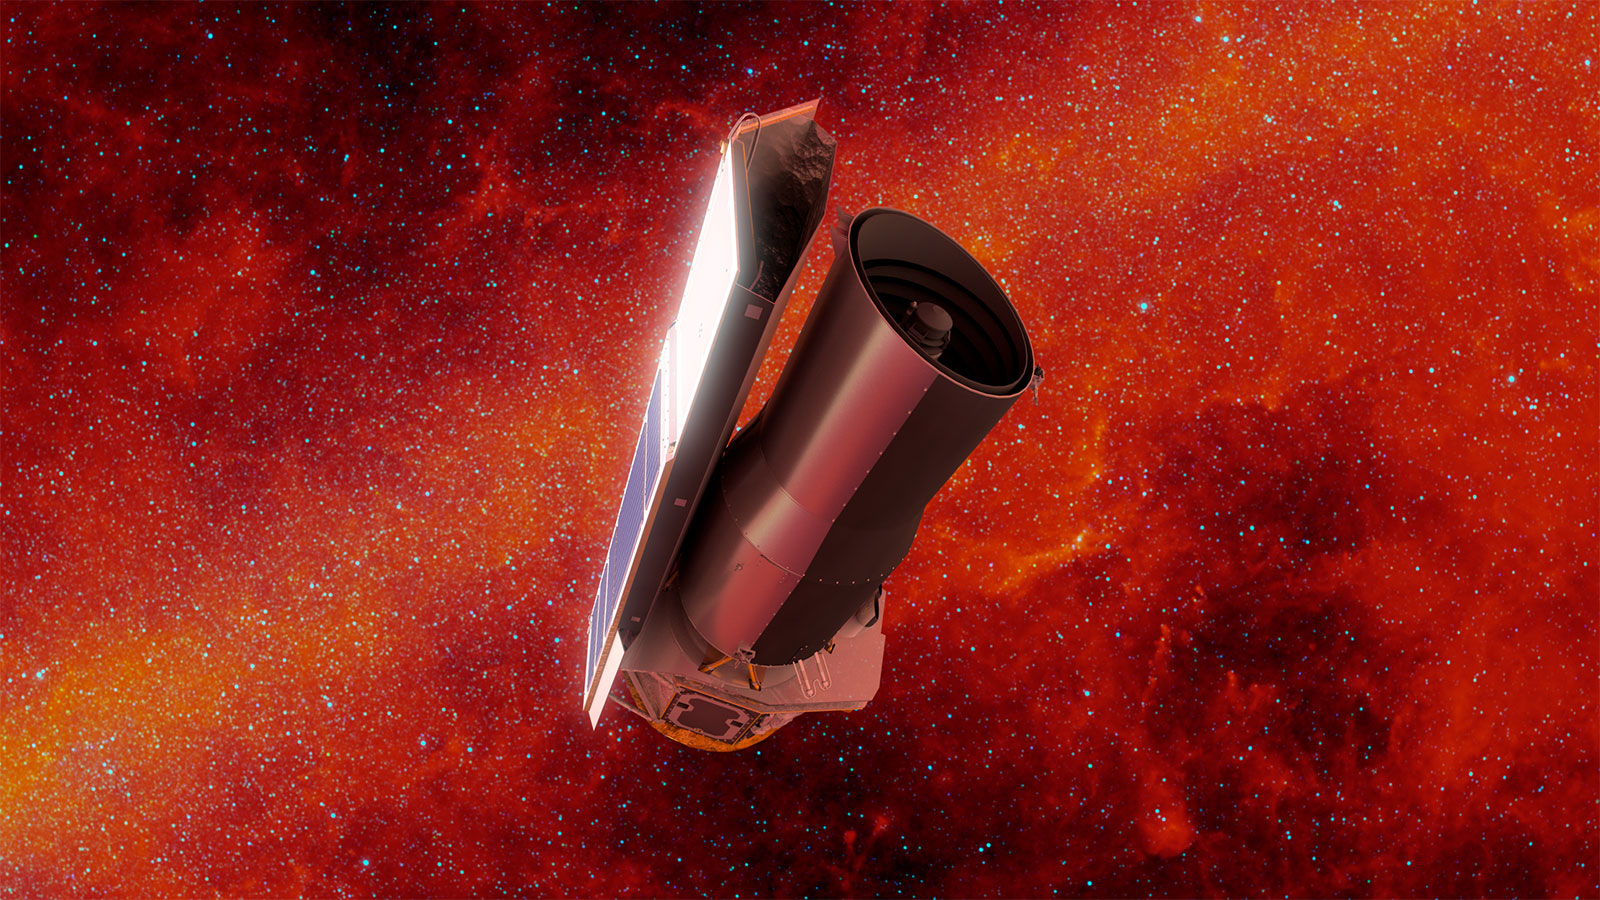 artist's rendering of NASA's Spitzer Space Telescope